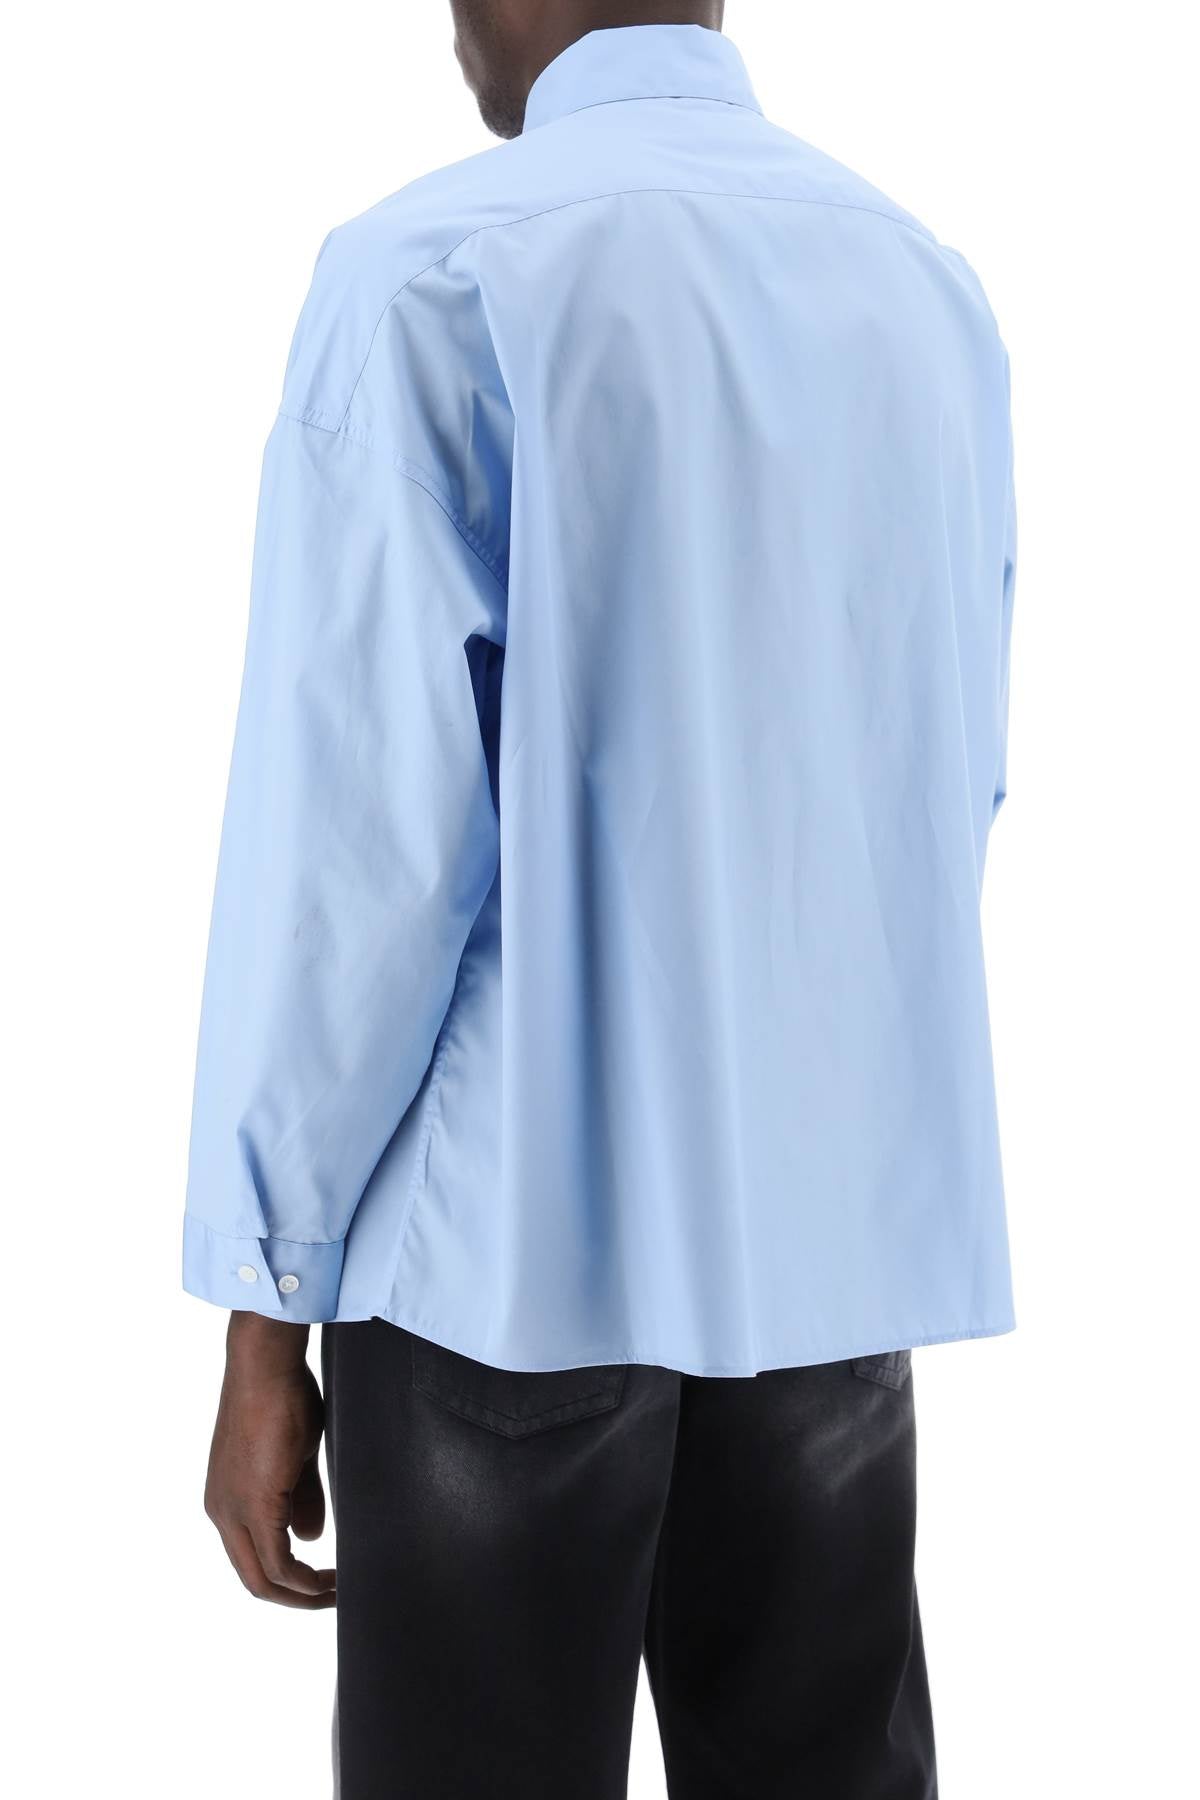 Marni boxy shirt with italian collar-2